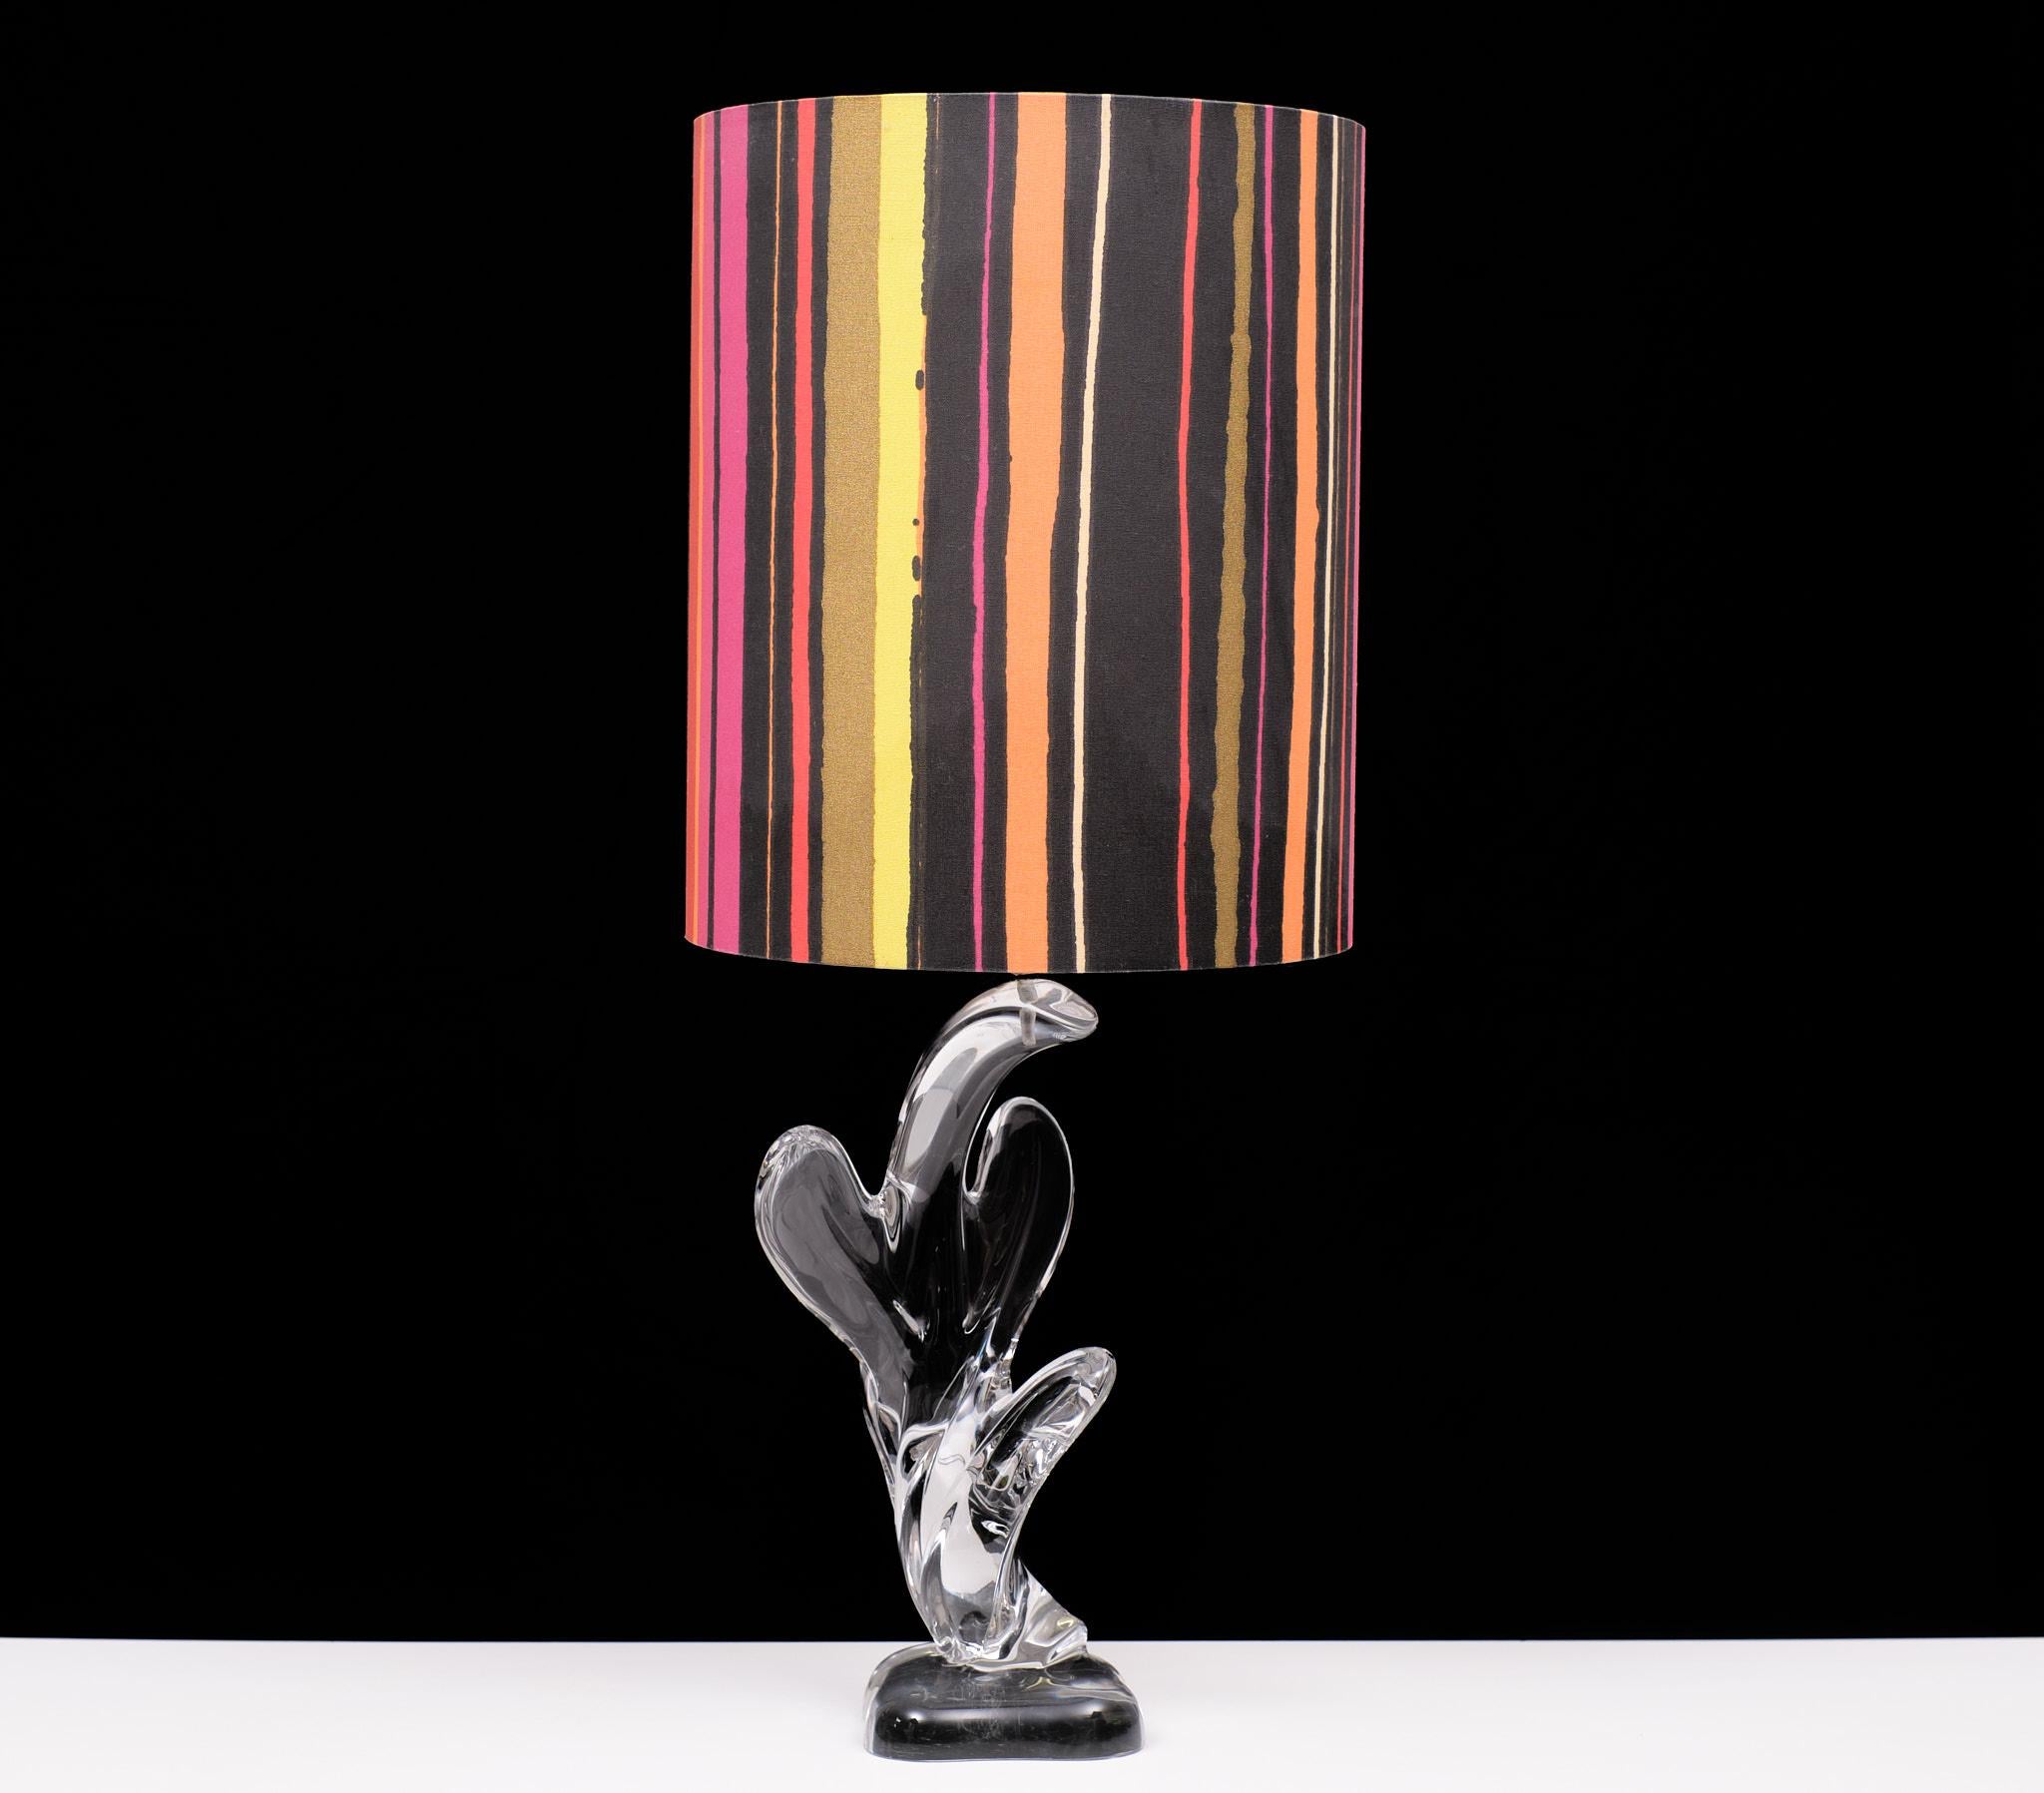 Lampe de table Cactus en cristal de verre massif fabriquée par Vannes le Chatel France années 1960 
lampe agréable et élégante, livrée avec un très bel abat-jour coloré.